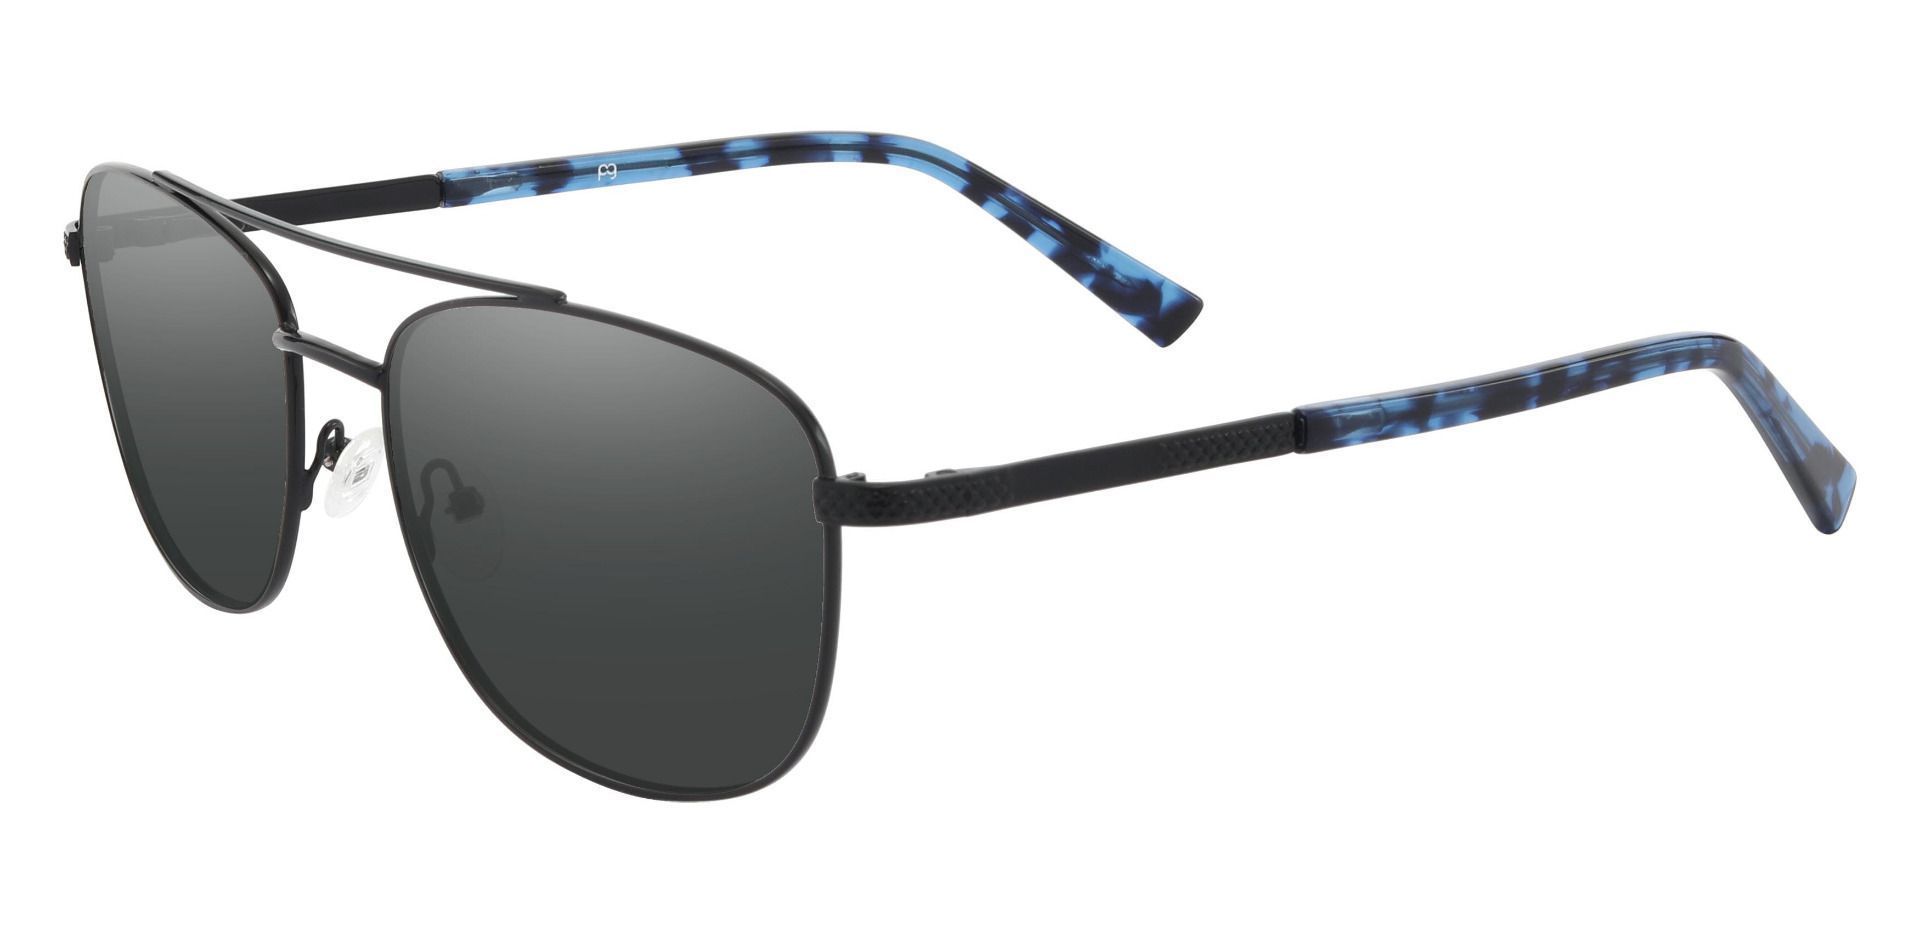 Erick Aviator Progressive Sunglasses - Black Frame With Gray Lenses